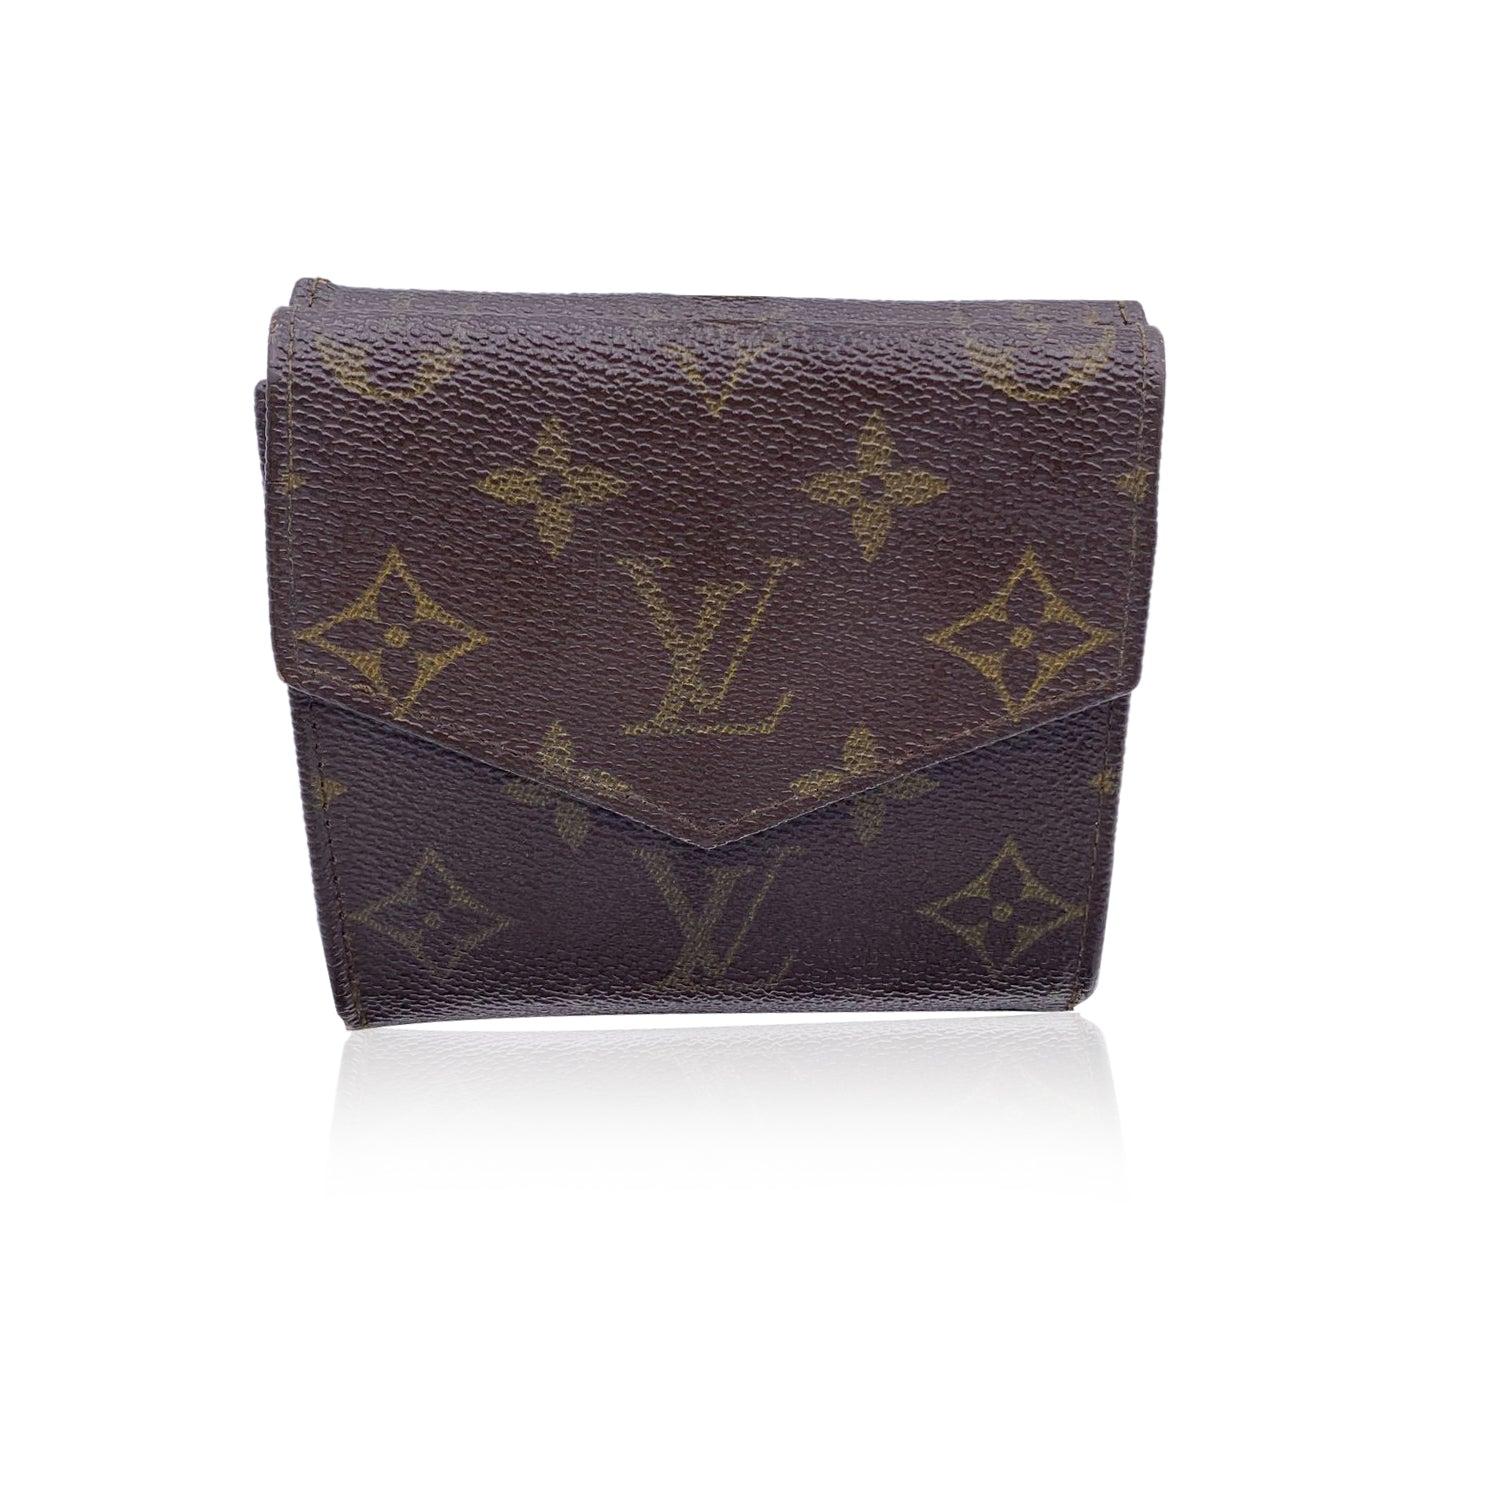 Portefeuille vintage de forme carrée Louis Vuitton avec double rabat latéral. Confectionné en toile monogramme marron. Doublure en cuir. 1 compartiment à monnaie à rabat sur un côté et une section trifold sur l'autre côté, avec 2 compartiments à